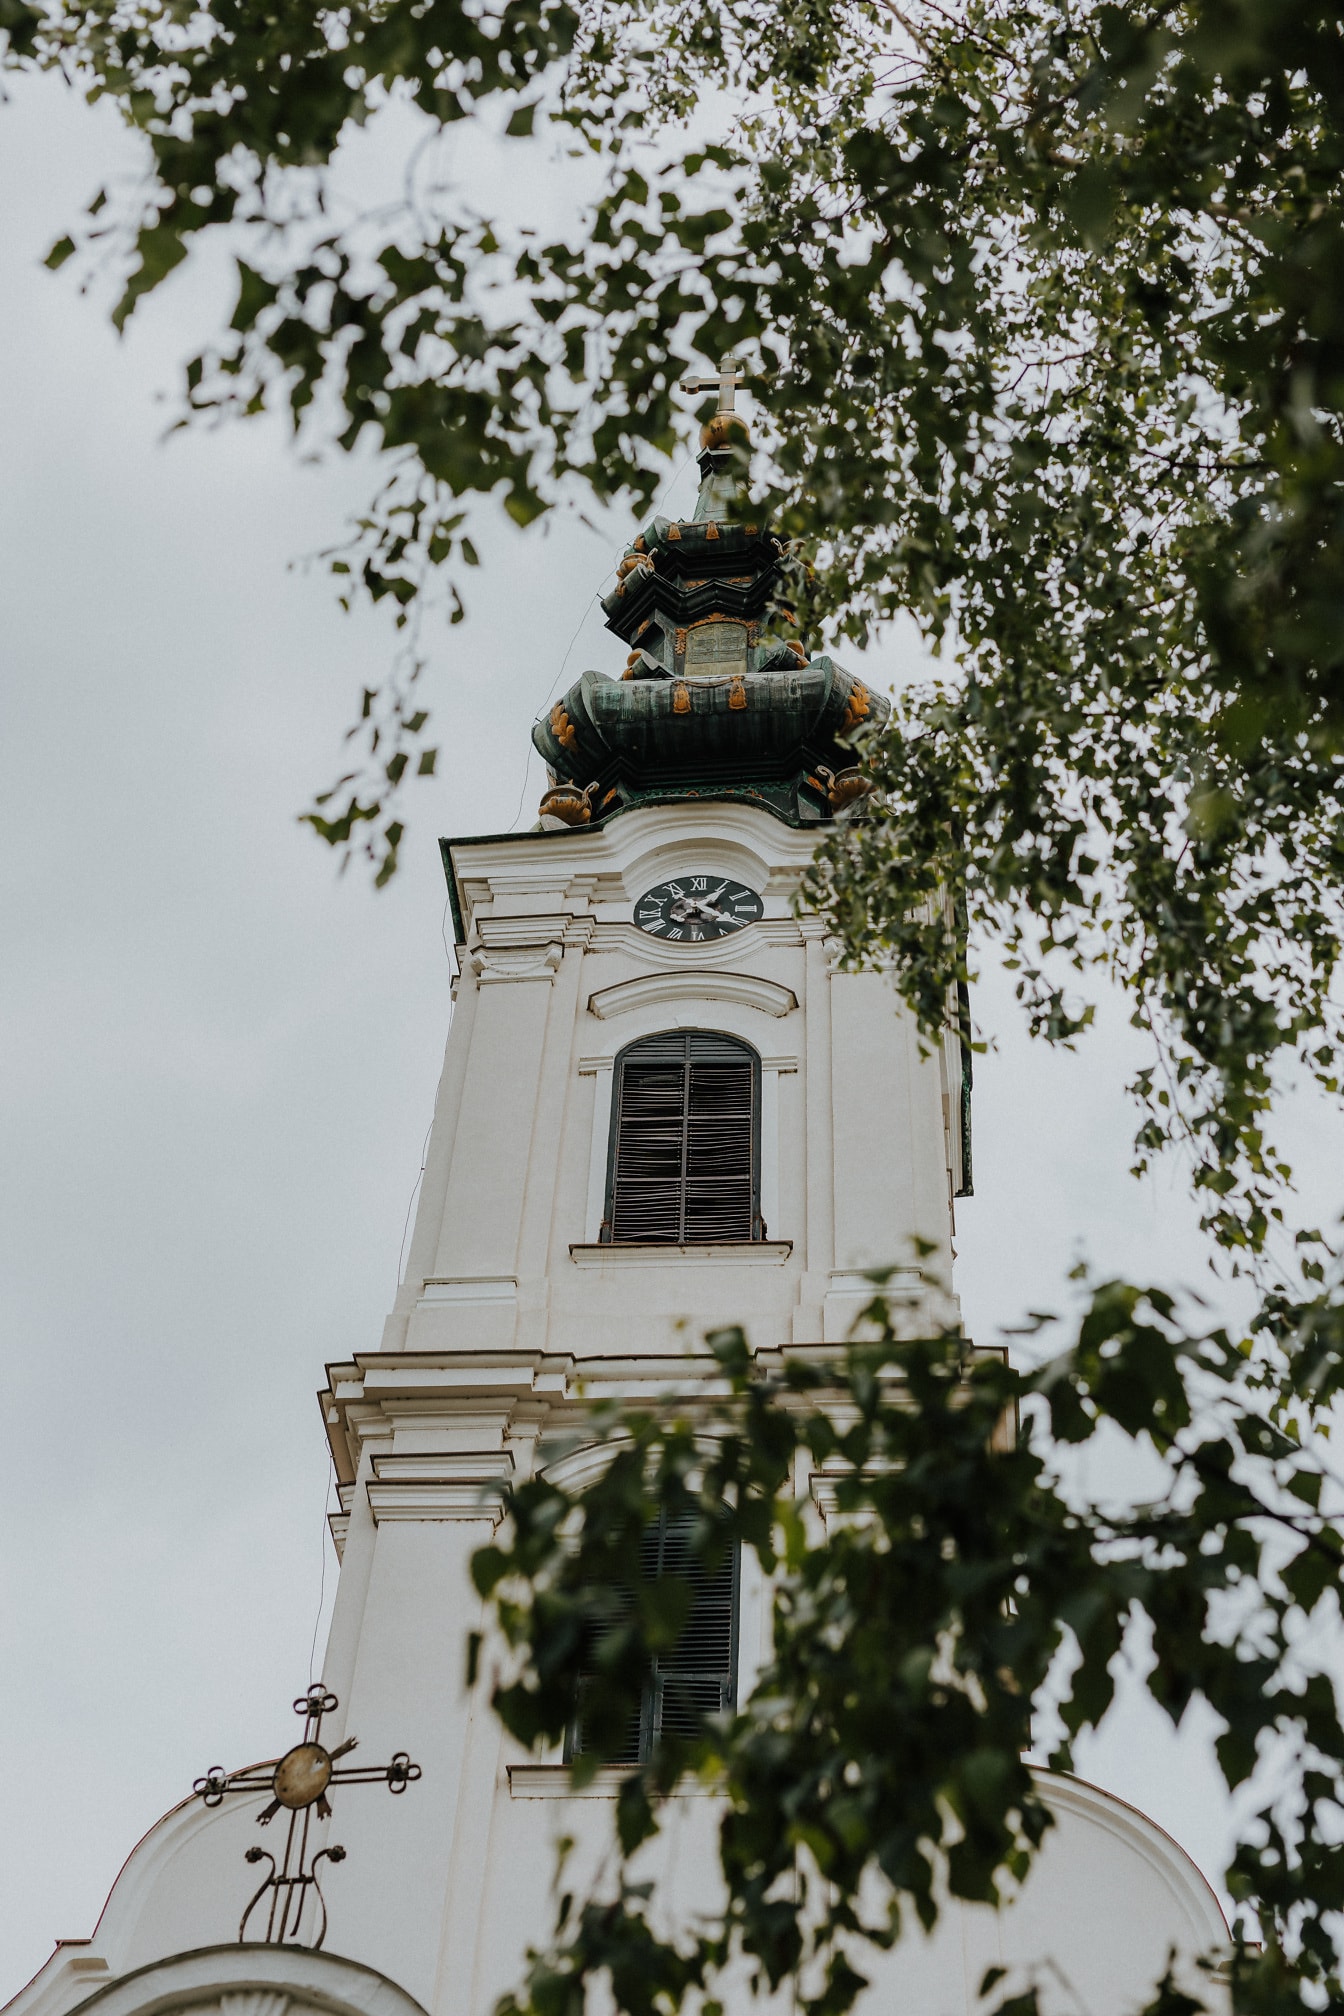 Tháp nhà thờ màu xanh đậm của nhà thờ chính thống trắng ở Serbia